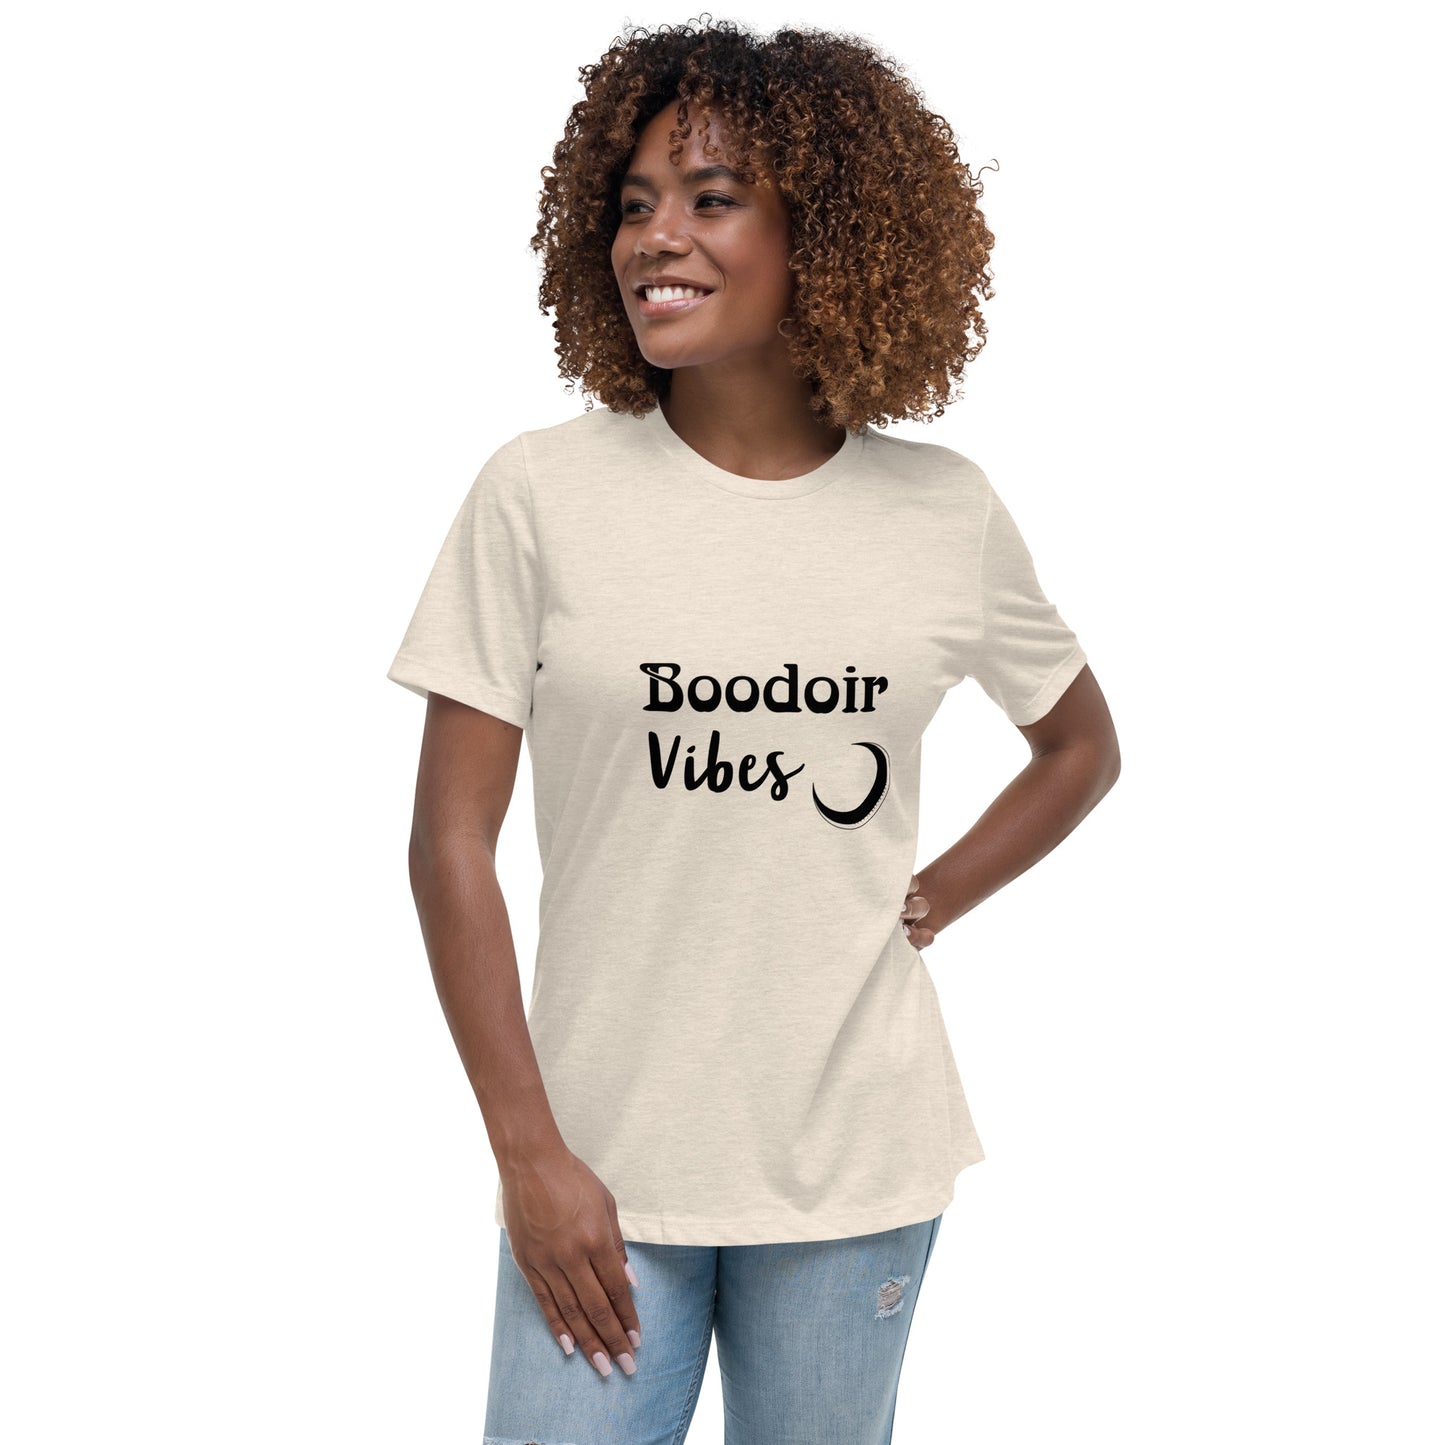 BOOdoir - Vibes - Women's Relaxed T-Shirt